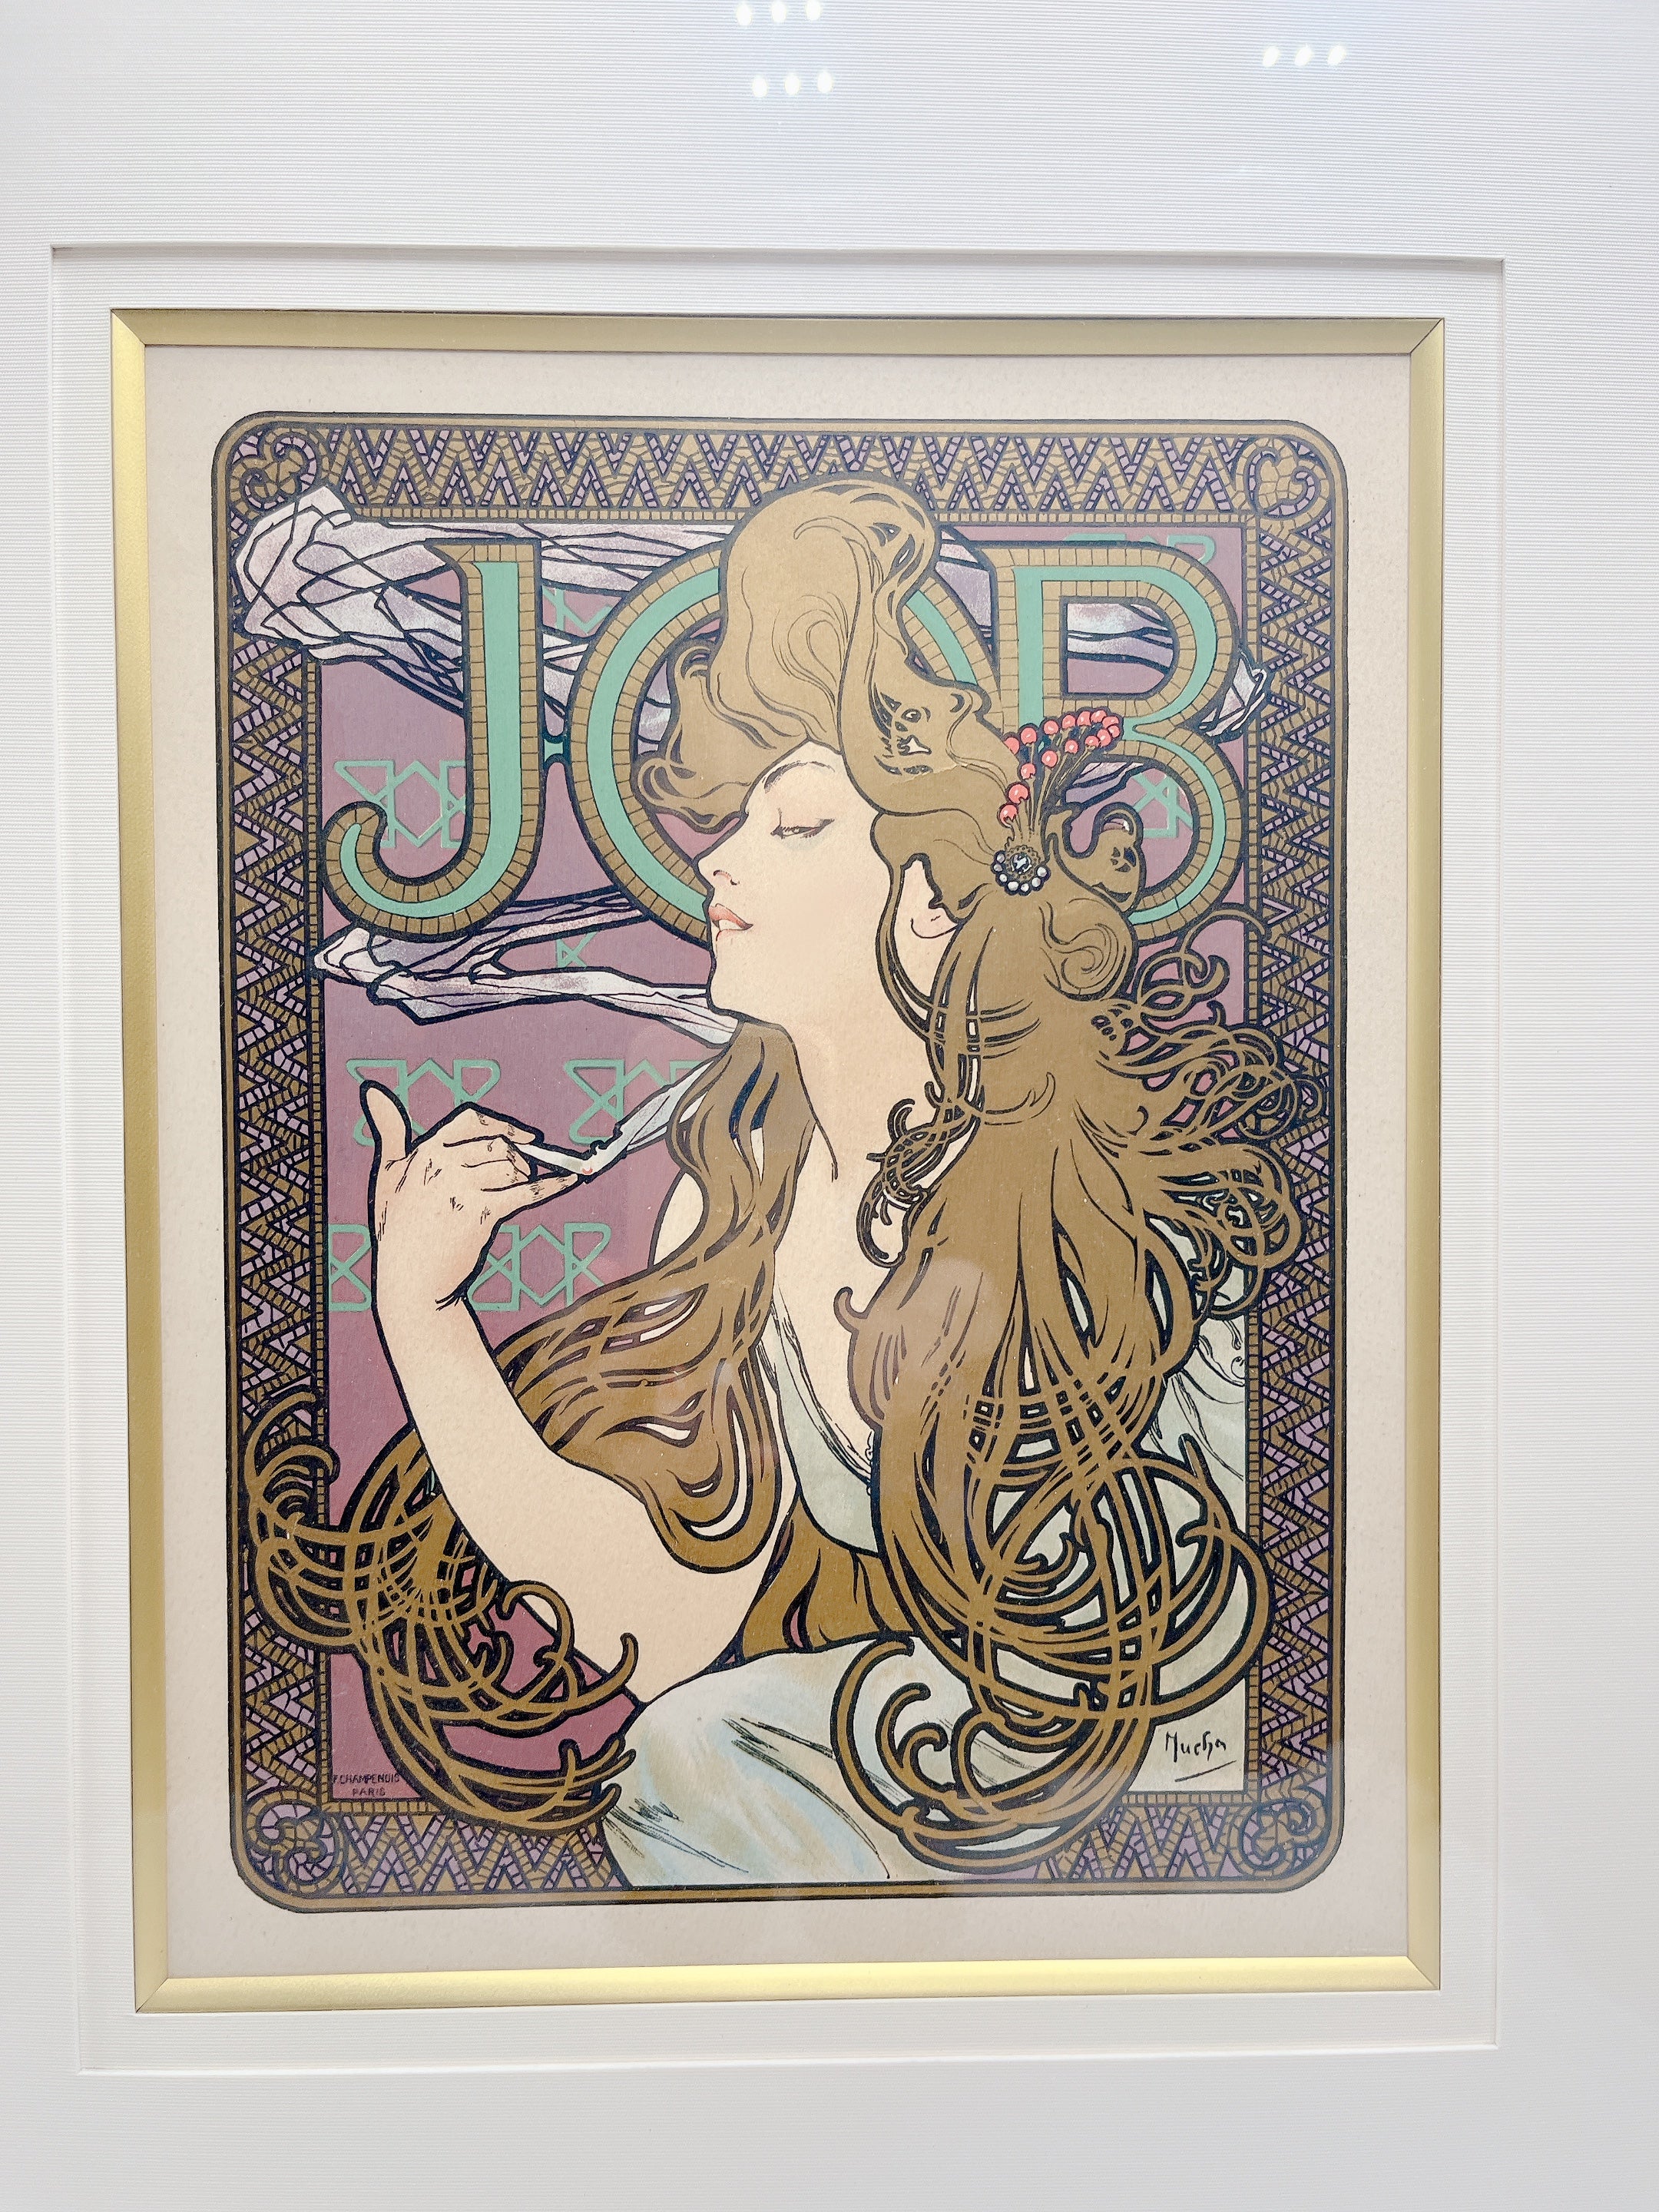 ミュシャ「JOB」1897年 ポスター芸術の巨匠たちより | ギャラリーK